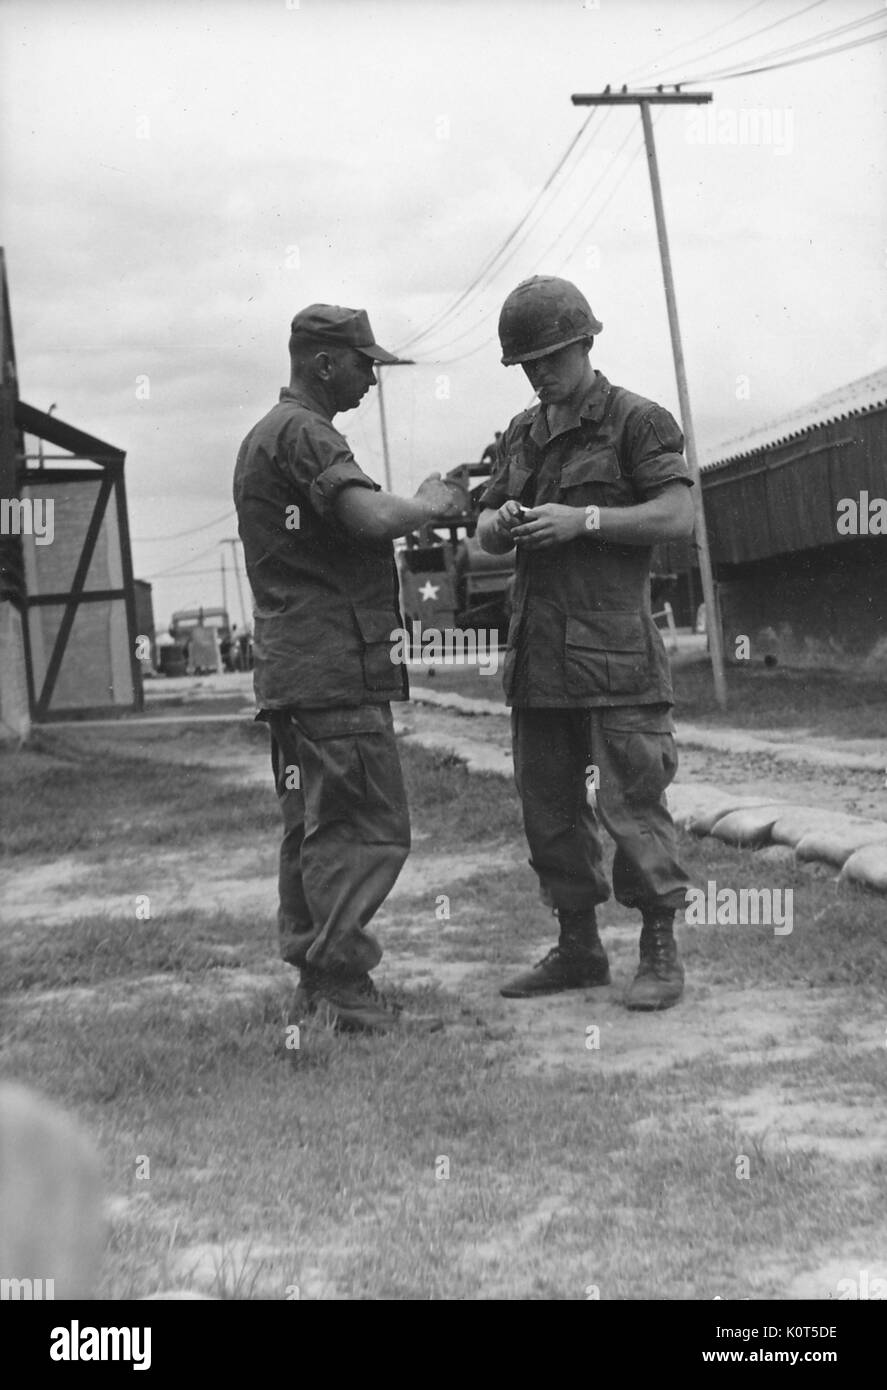 Ein Foto von zwei United States Army Soldaten im Kampf Uniformen sprechen auf ihre Basis, Vietnam, 1967. Stockfoto